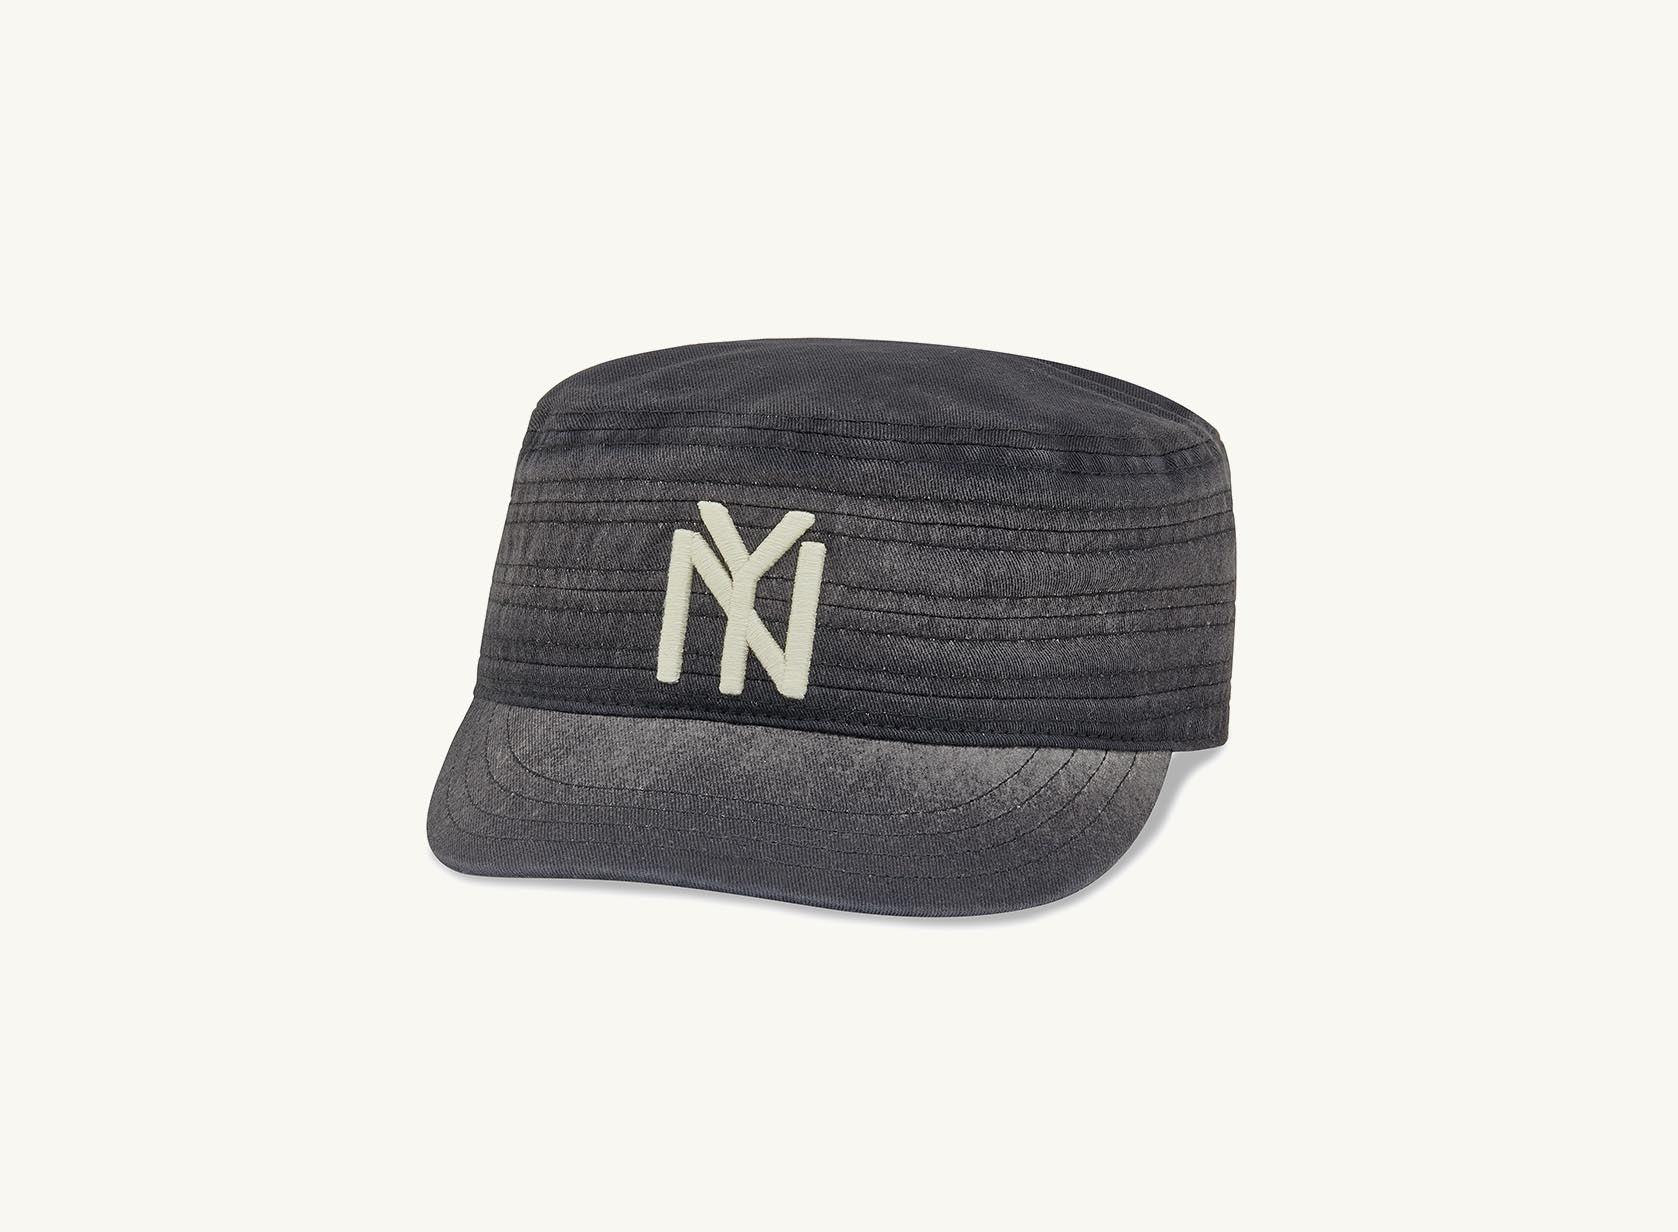 NY Black Yankees Pillbox Hat – Wright & Ditson